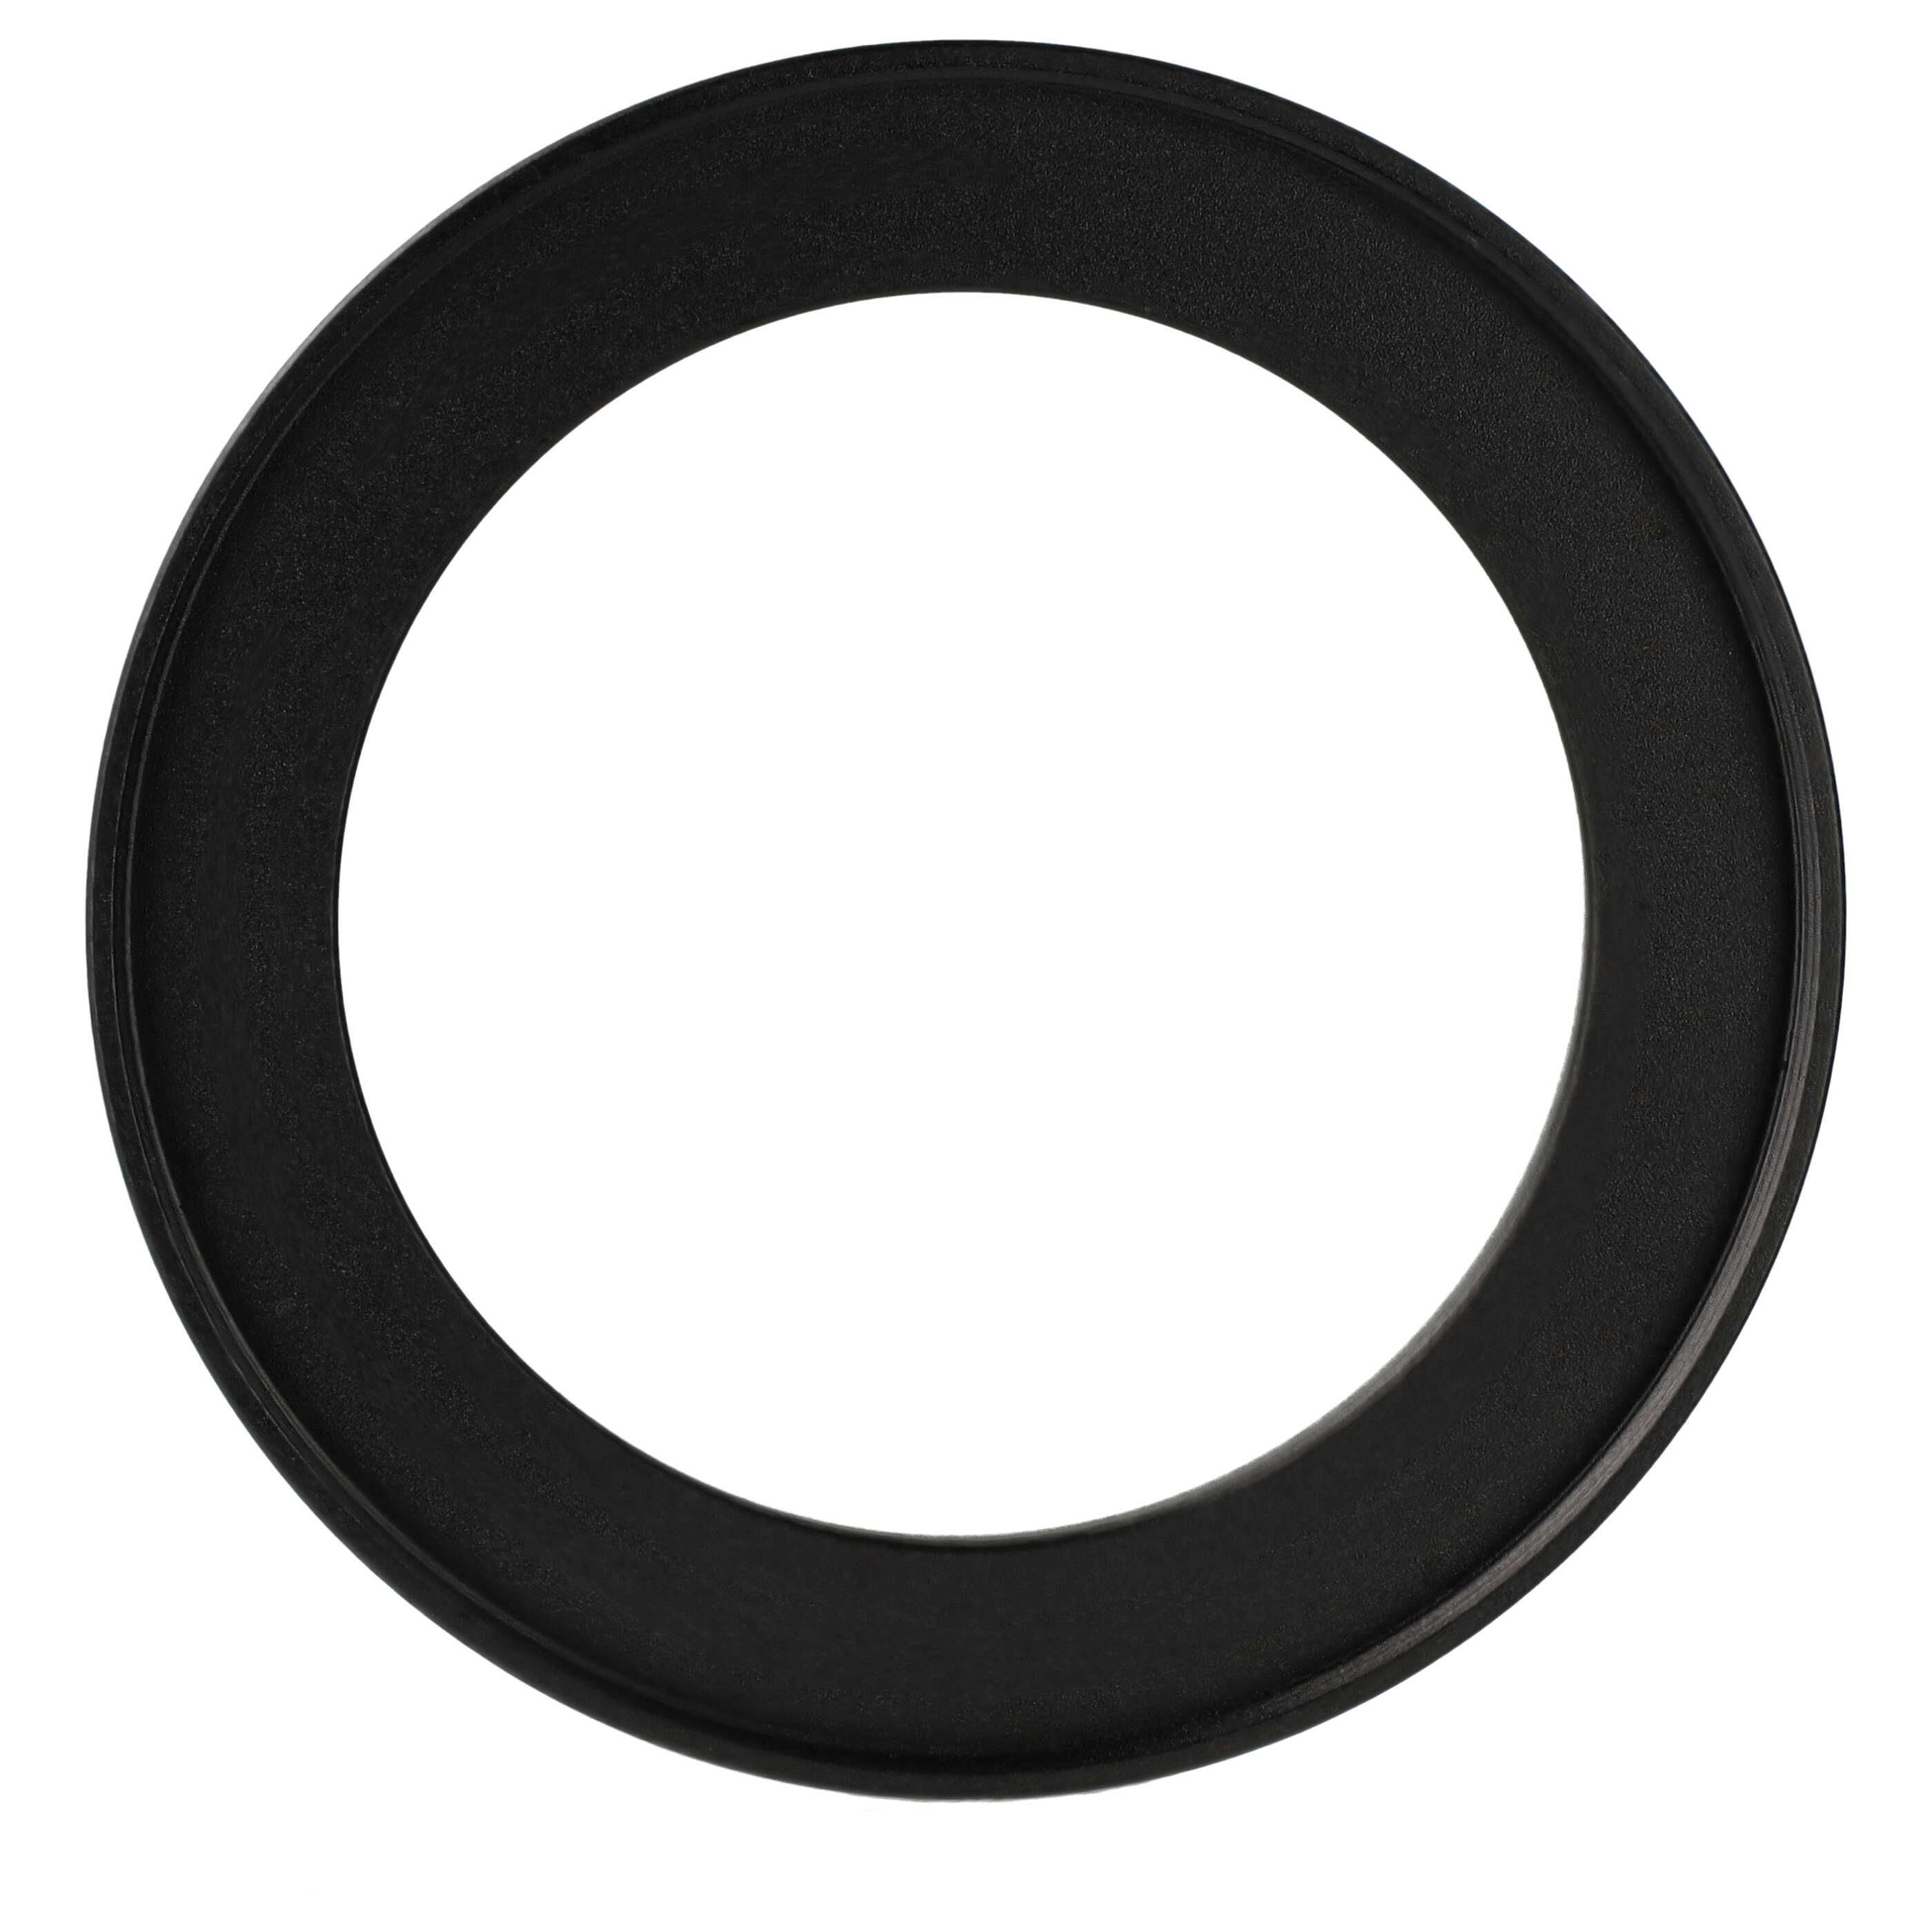 Step-Up-Ring Adapter 52 mm auf 67 mm passend für diverse Kamera-Objektive - Filteradapter